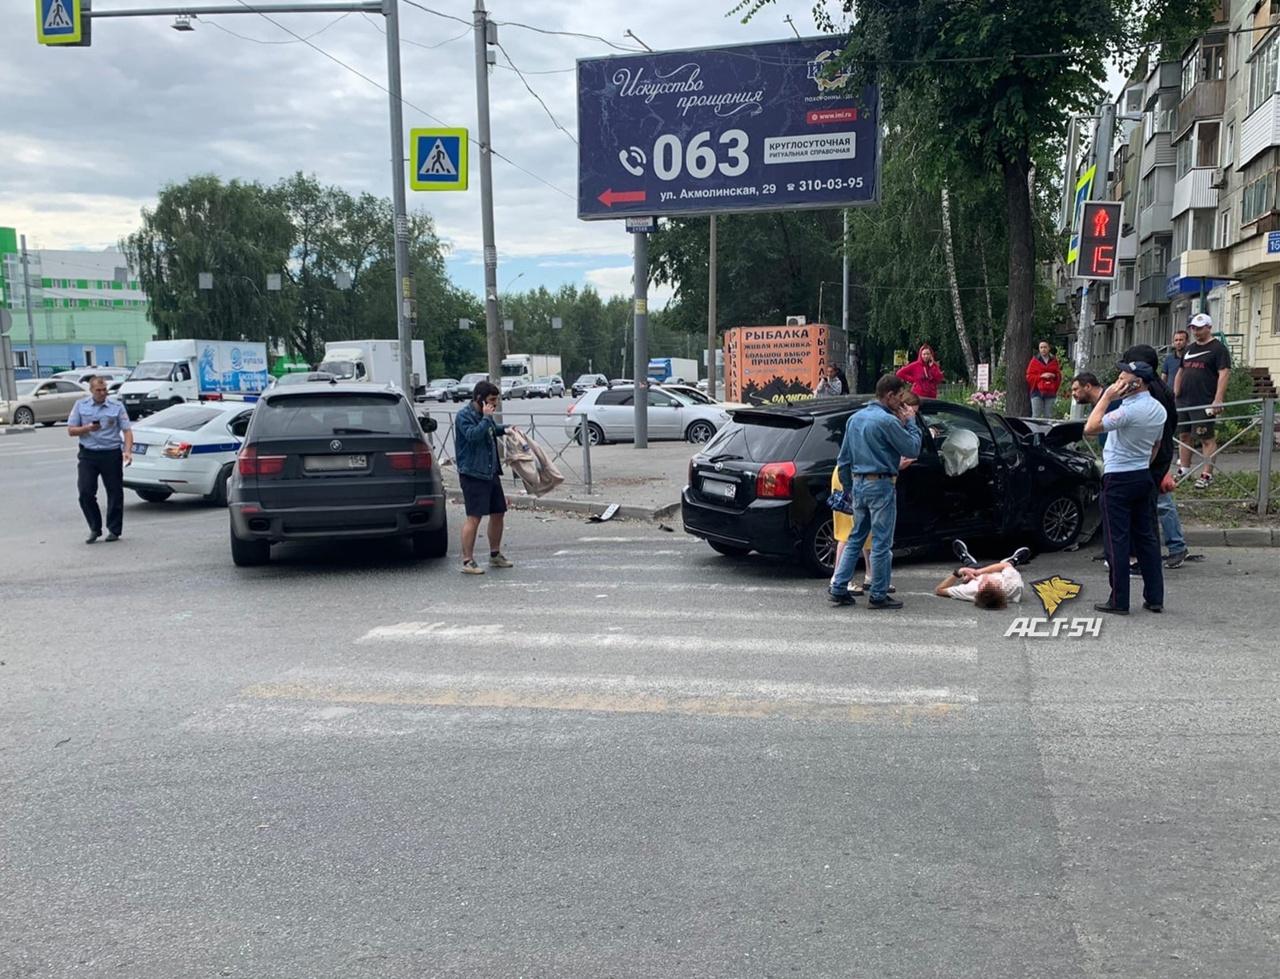 Фото Toyota столкнулась с машиной ДПС в Новосибирске 2